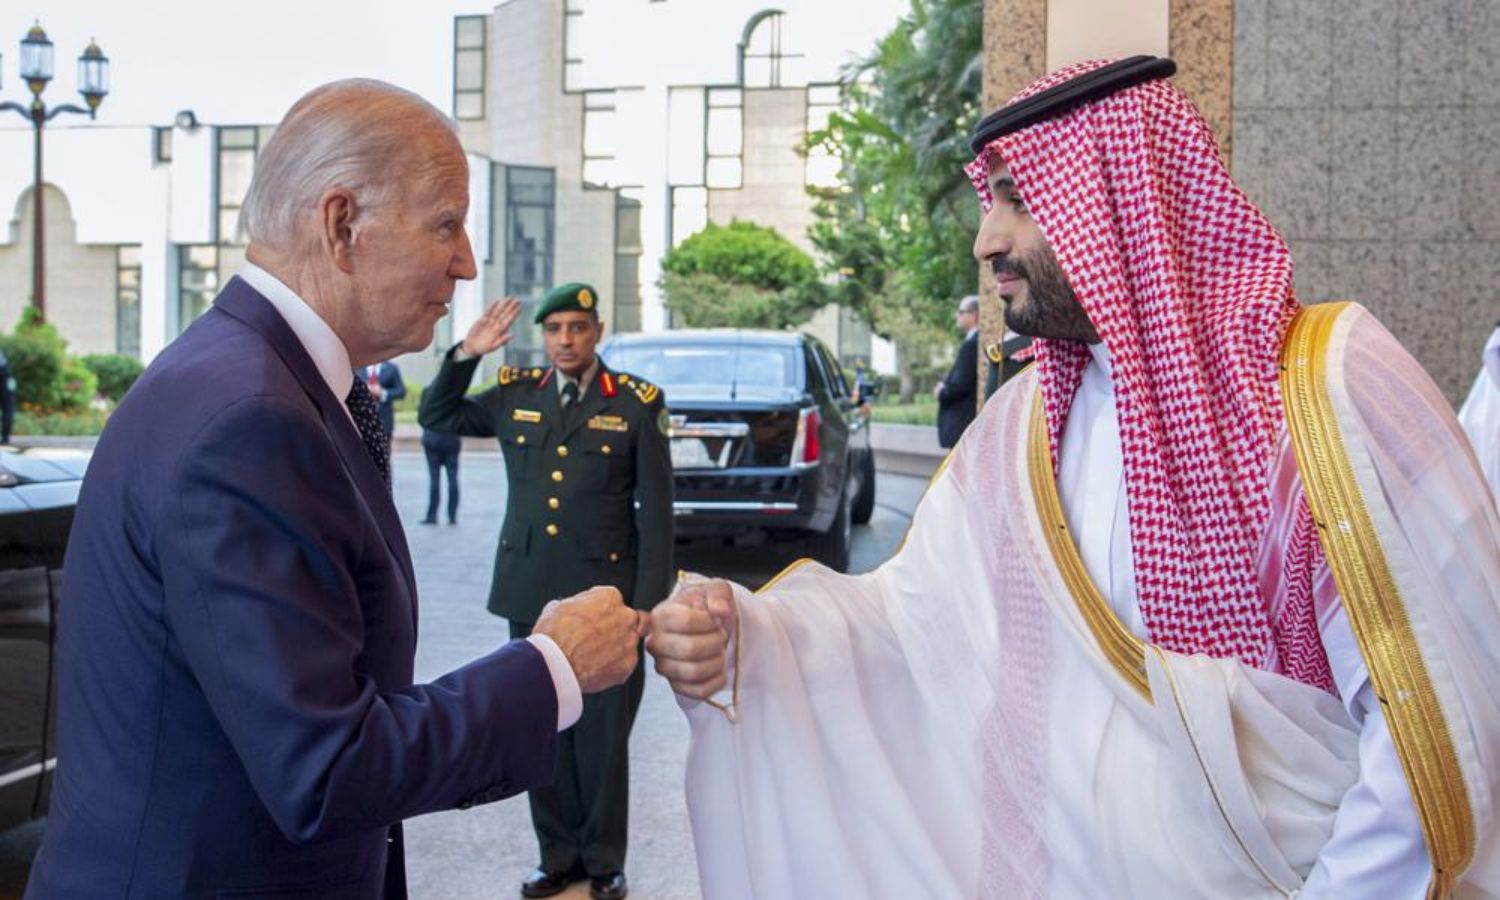 ولي العهد السعودي الأمير محمد بن سلمان يحيي الرئيس جو بايدن بقبضة يده بعد وصوله إلى قصر السلام في جدة- المملكة العربية السعودية - 15 من تموز 2022 (AP)